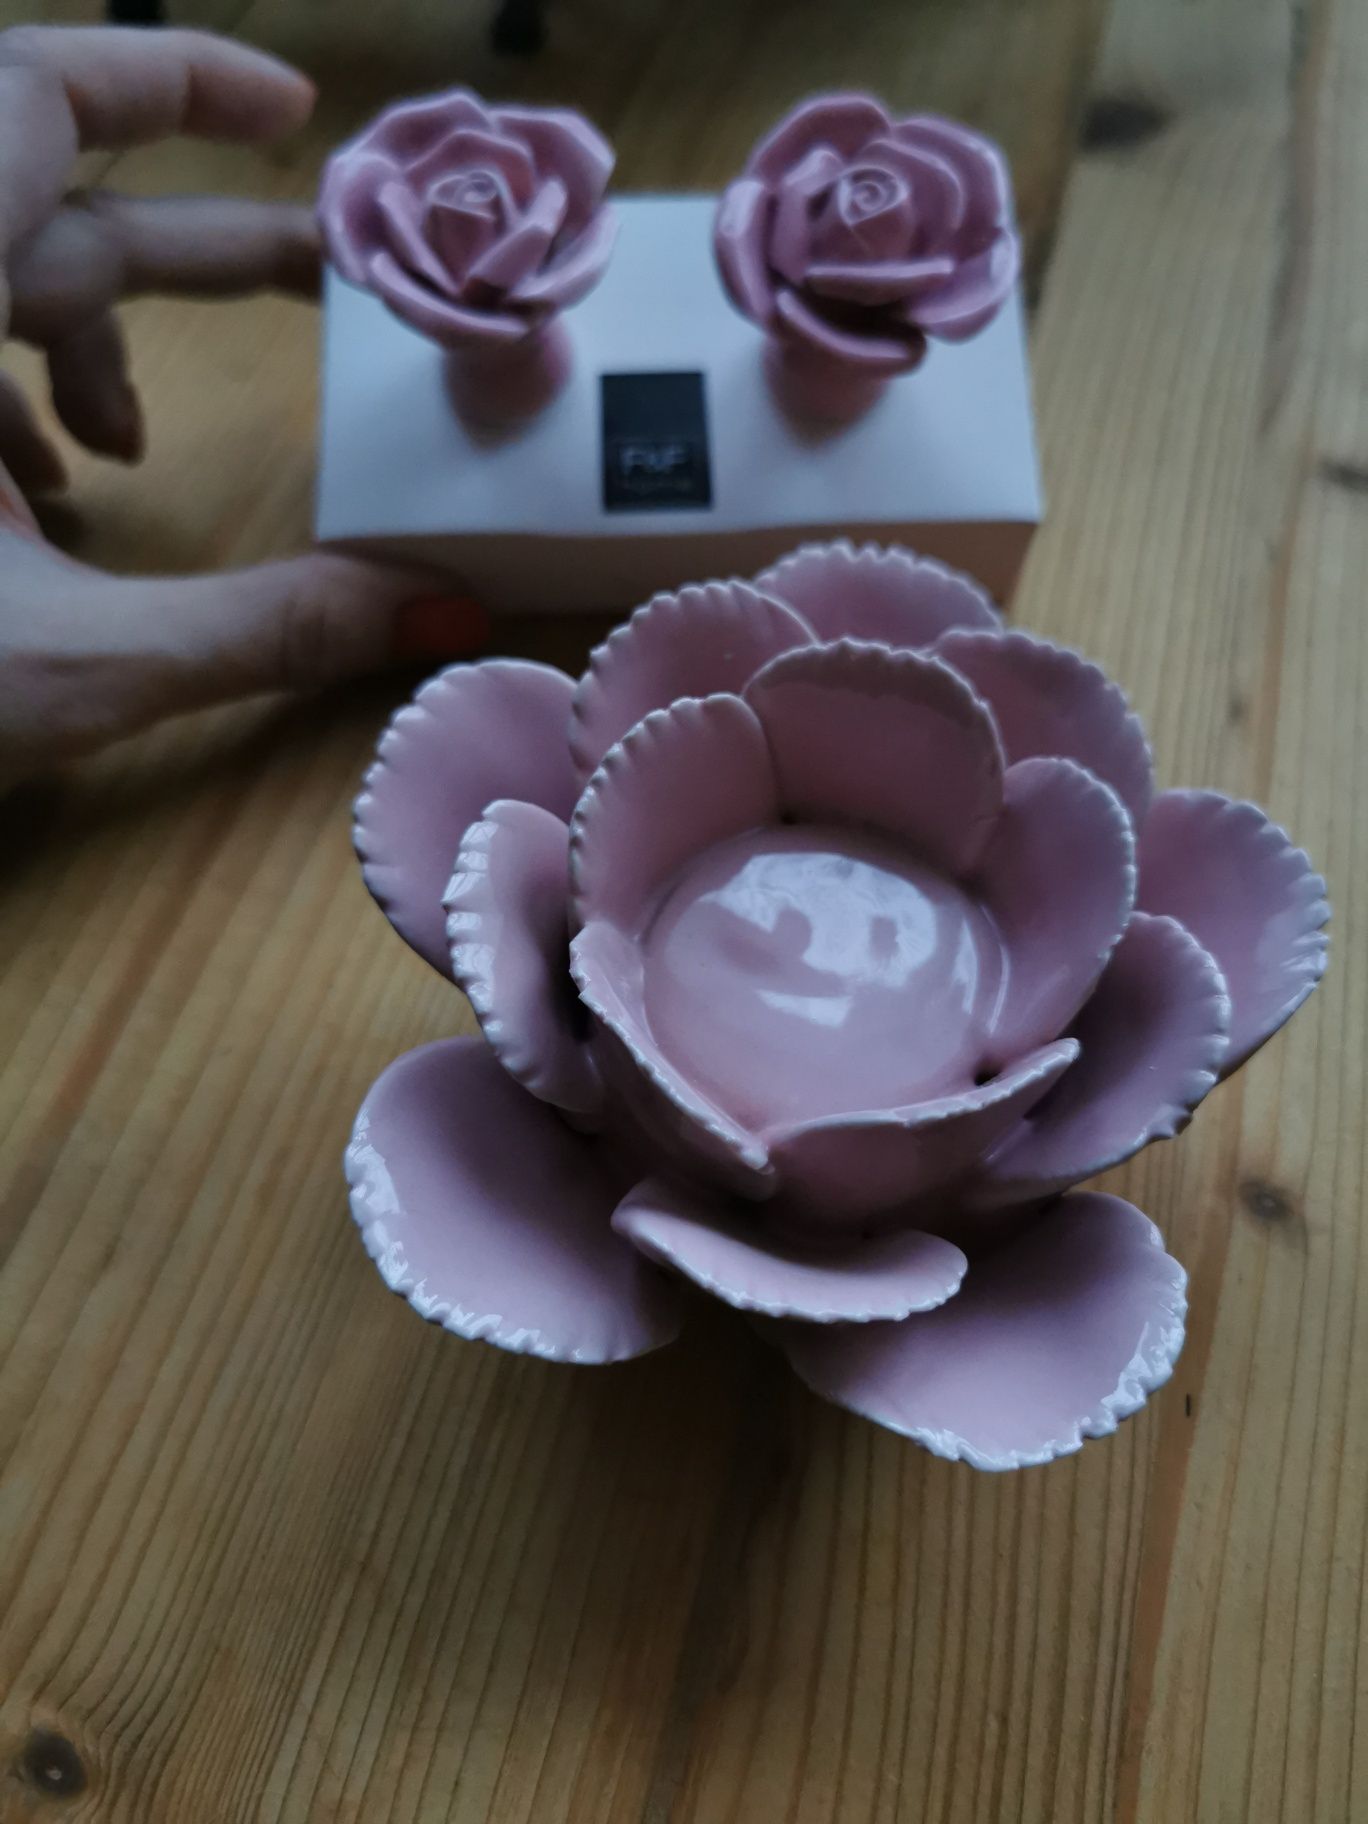 Komplet T-Light + 2 uchwyty do mebli różowy kwiat, pokój dziewczęcy